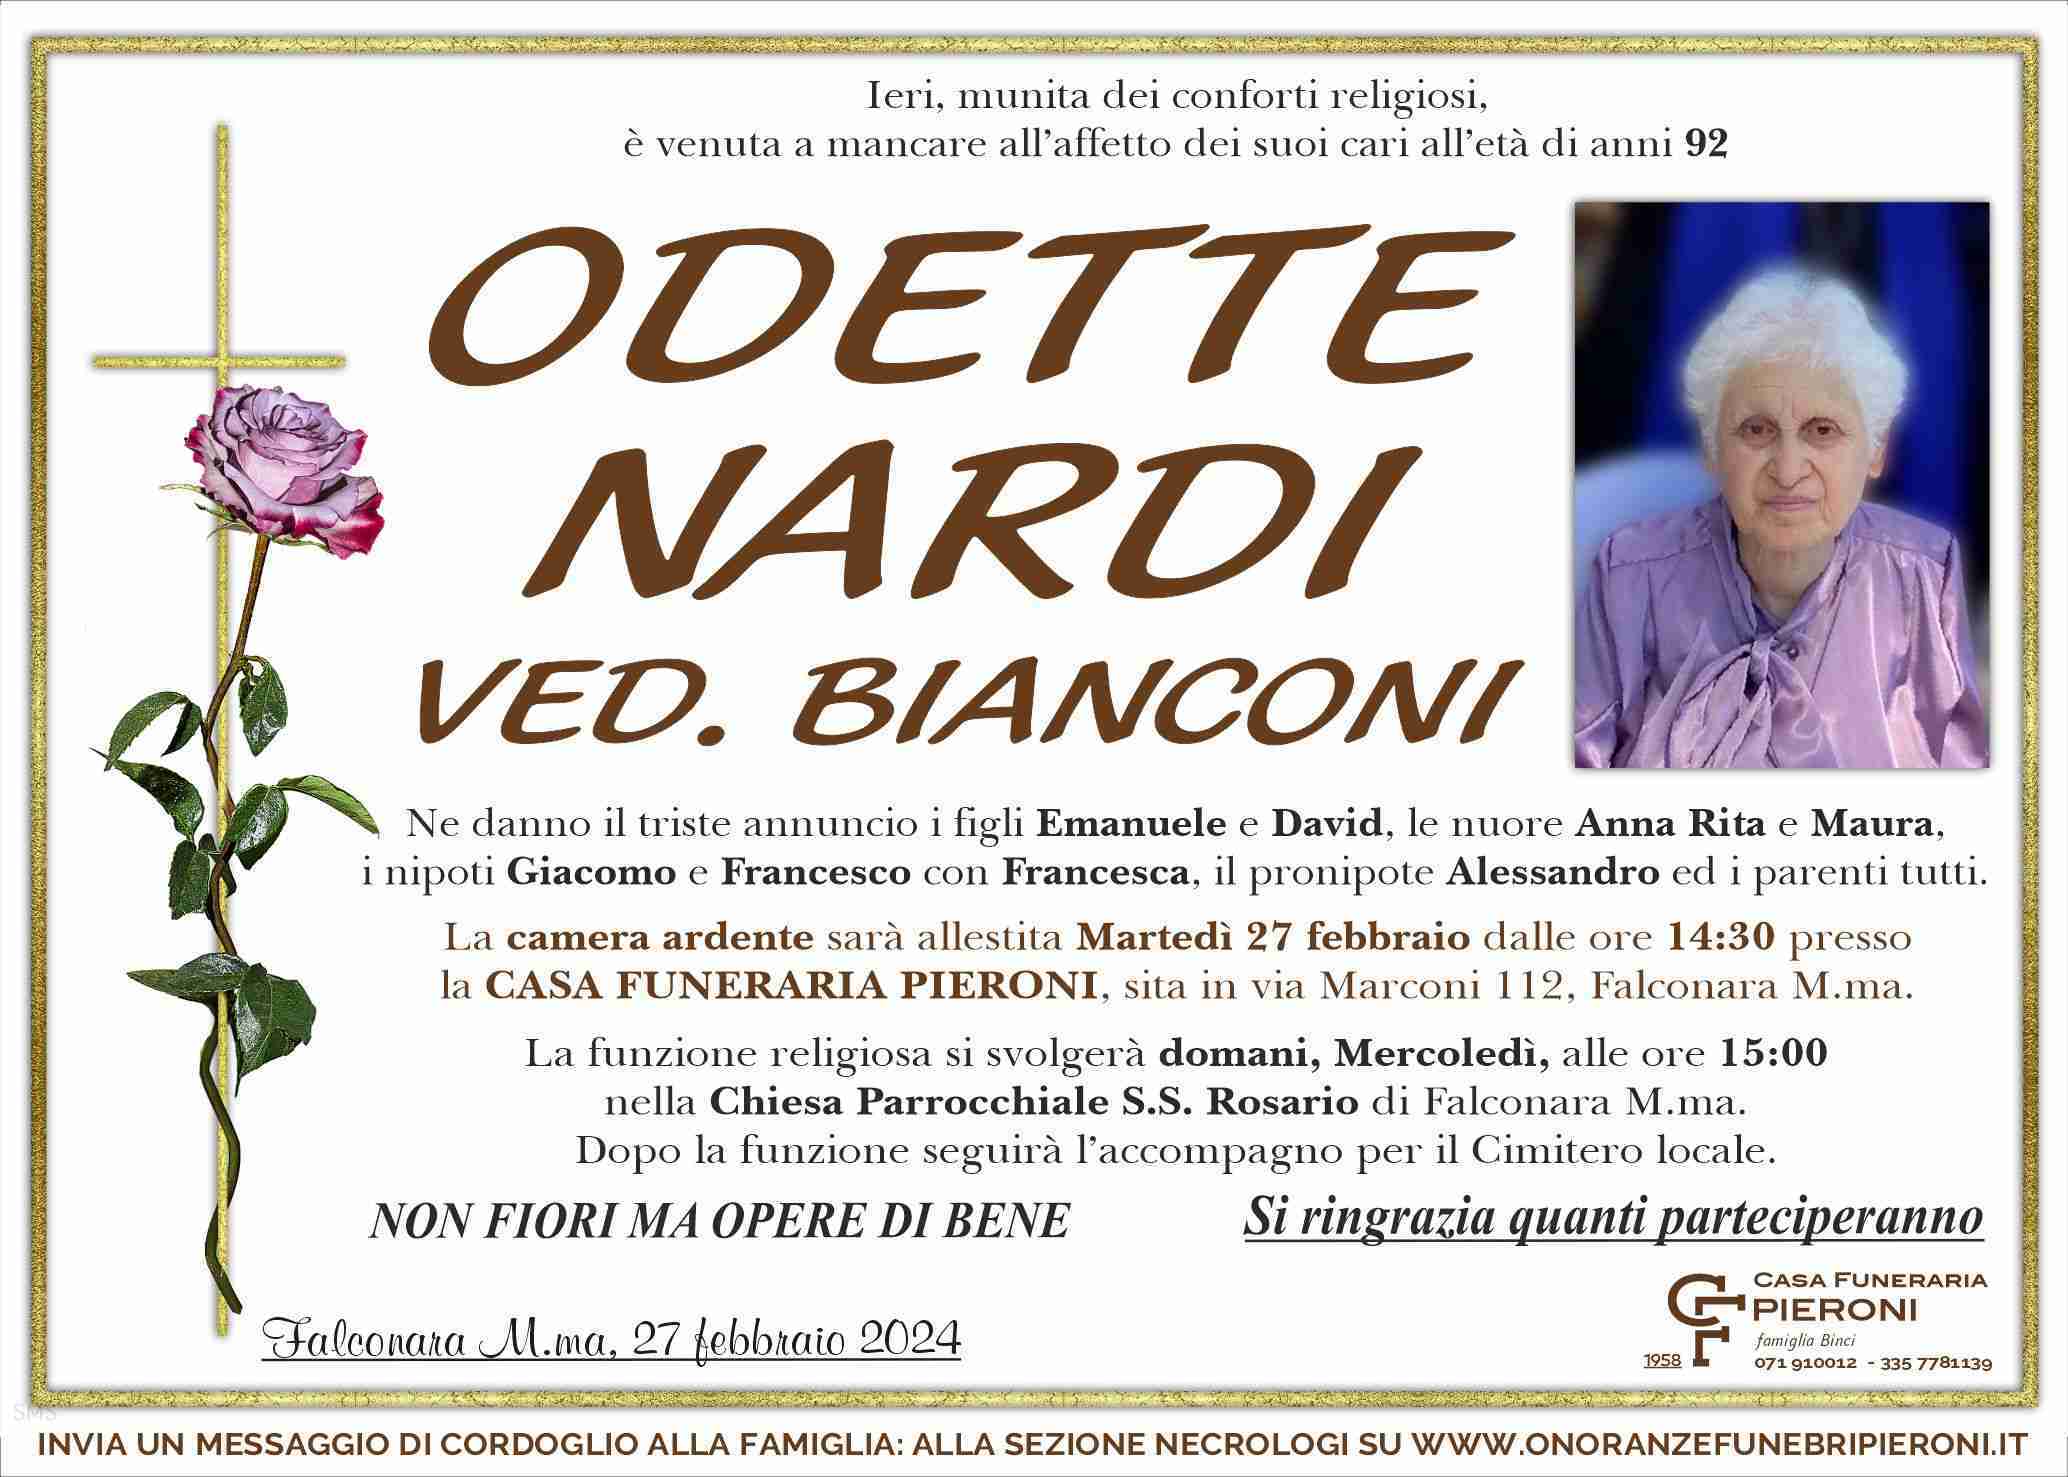 Odette Nardi